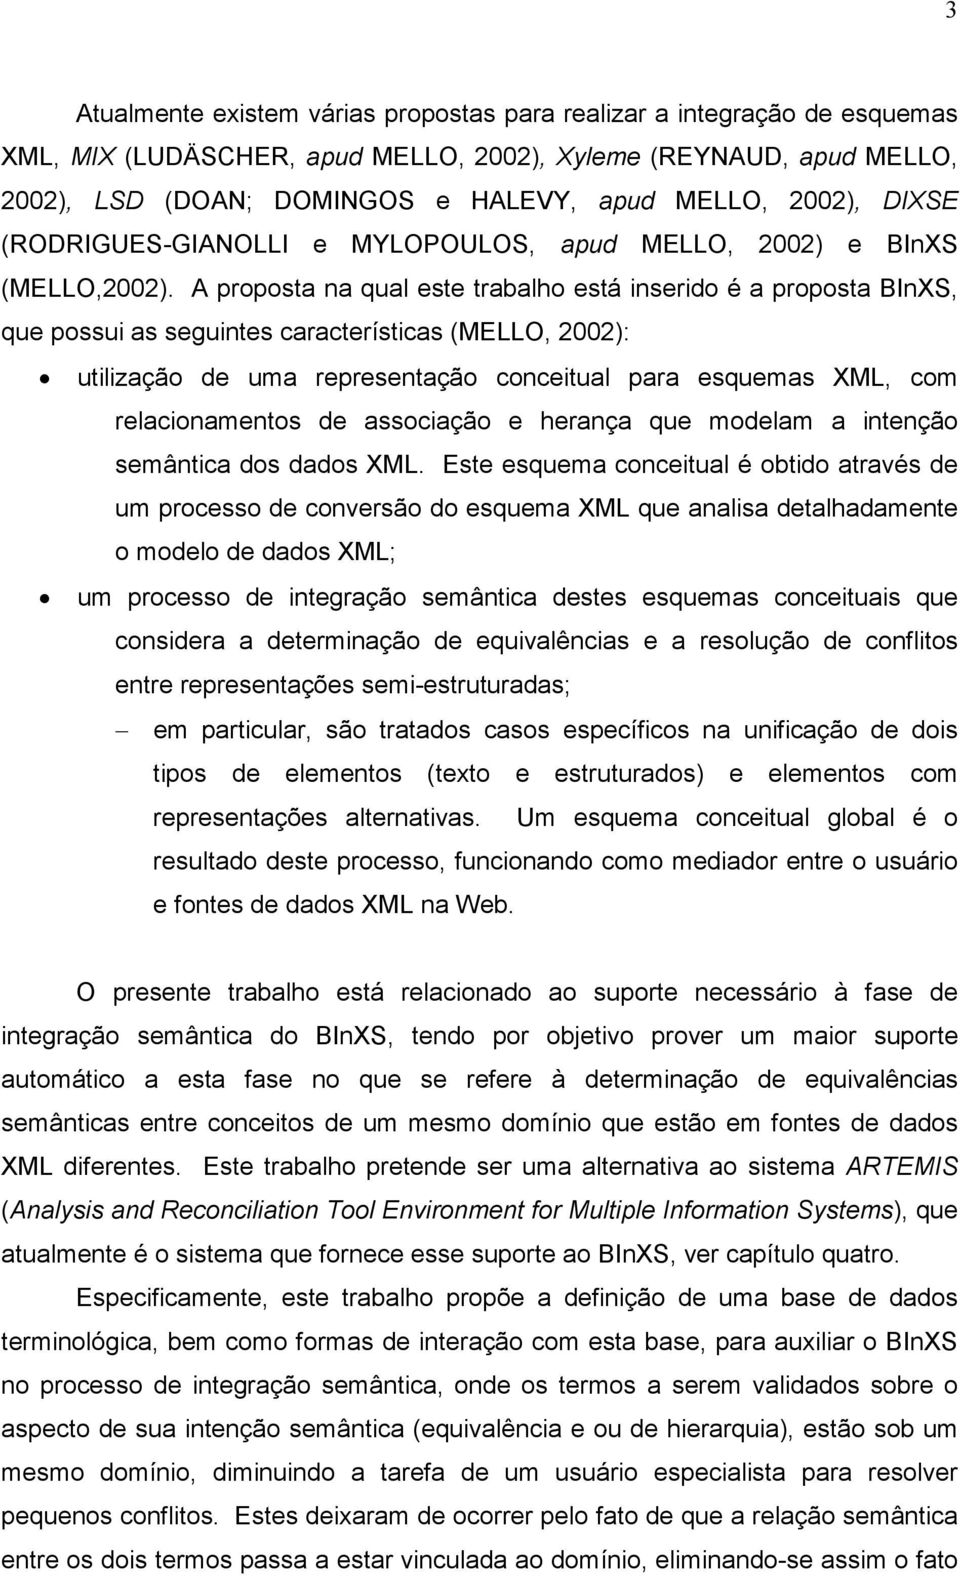 A proposta na qual este trabalho está inserido é a proposta BInXS, que possui as seguintes características (MELLO, 2002): utilização de uma representação conceitual para esquemas XML, com